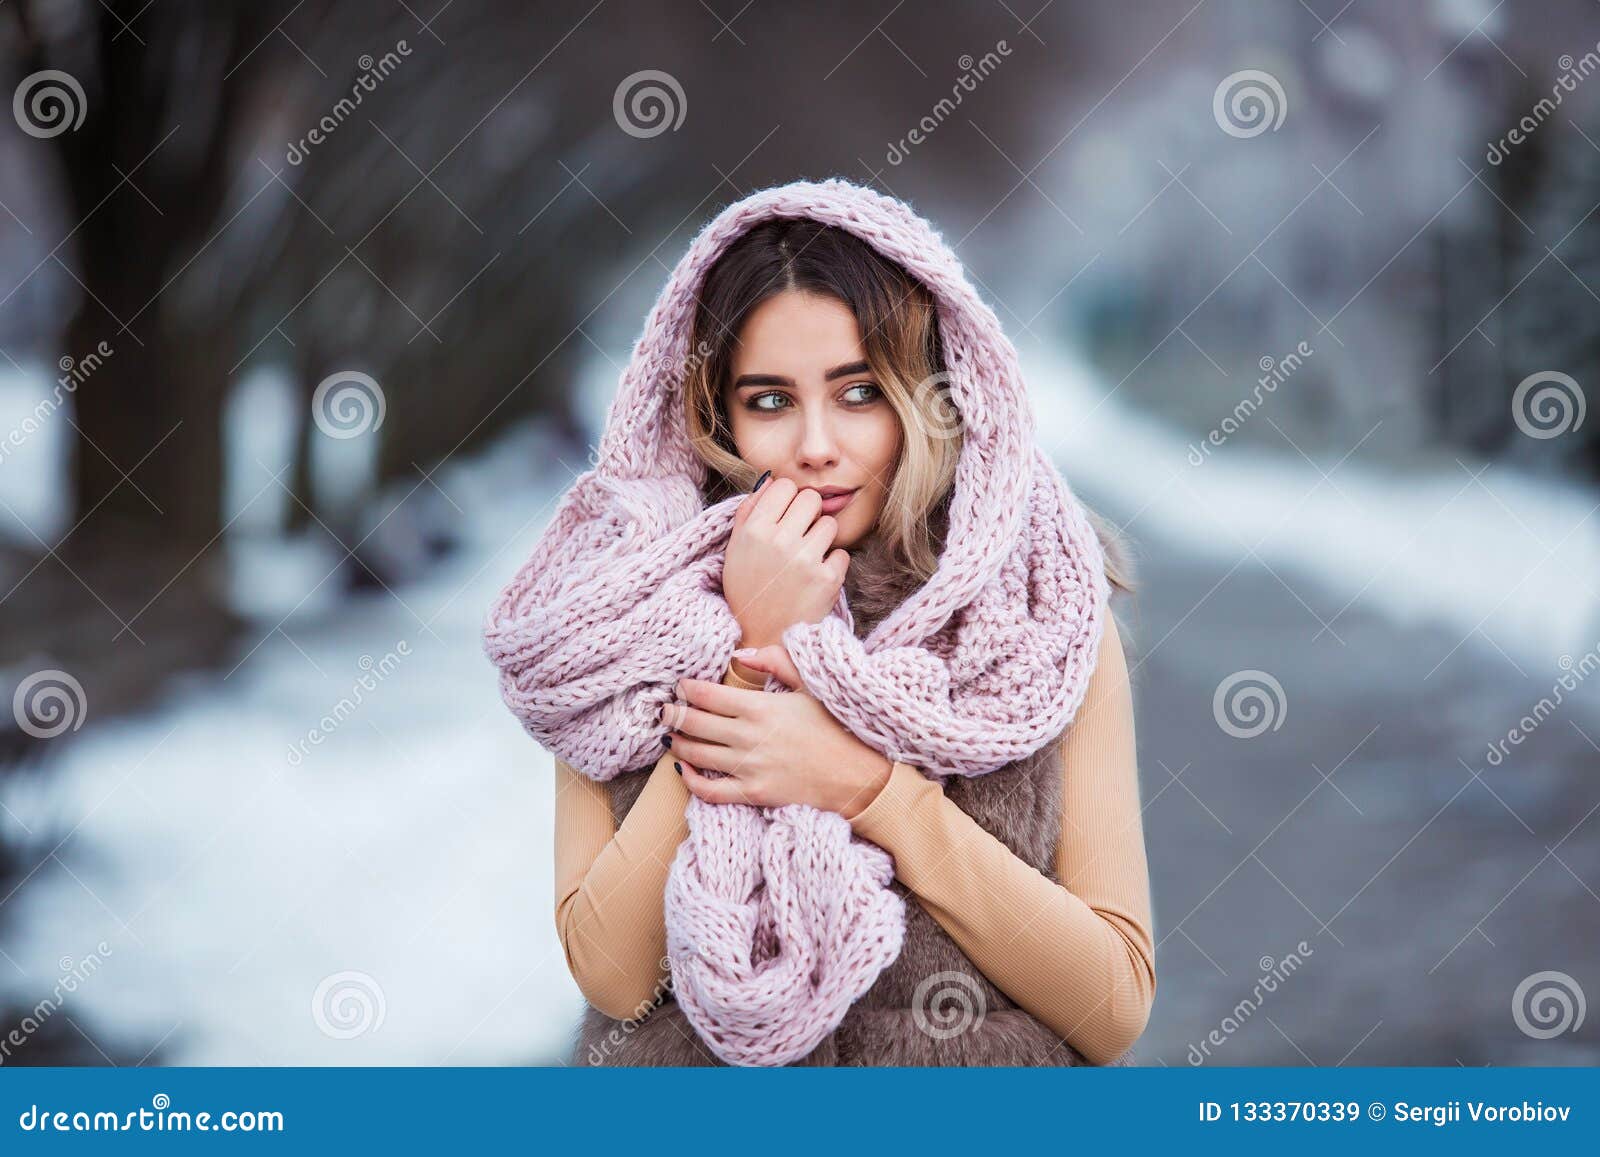 Retrato Del Invierno: Mujer Bonita Joven Vestido En La Ropa De Lana  Caliente Que Presenta Afuera Imagen de archivo - Imagen de muchacha,  juventud: 133382313